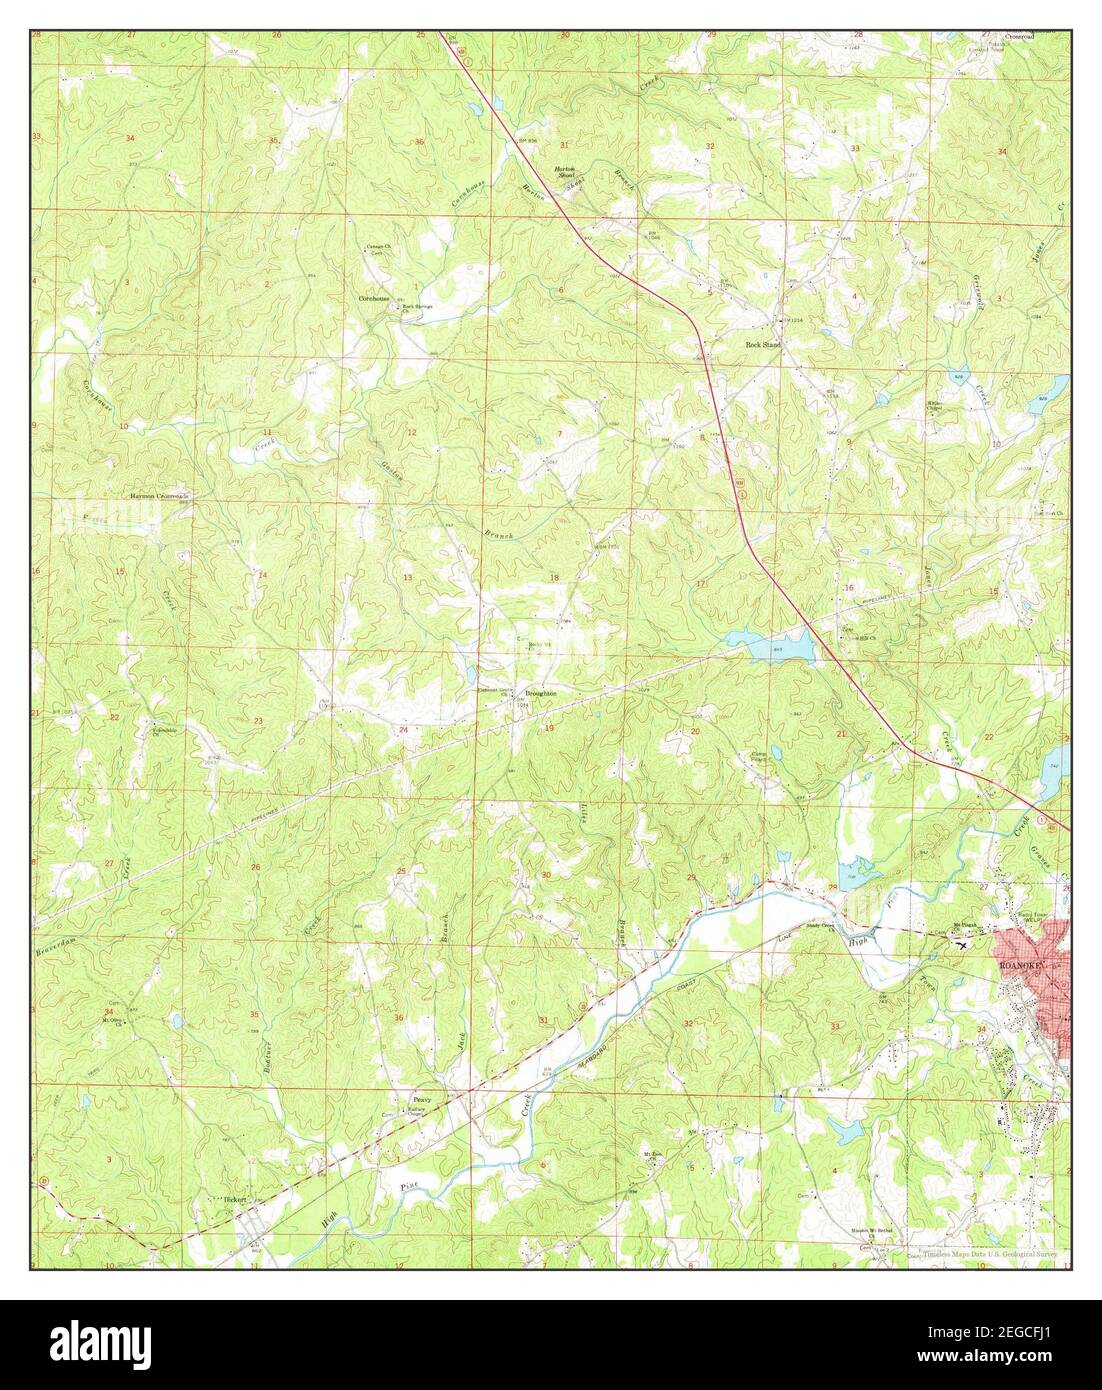 Roanoke West, Alabama, carte 1969, 1:24000, États-Unis d'Amérique par Timeless Maps, données U.S. Geological Survey Banque D'Images